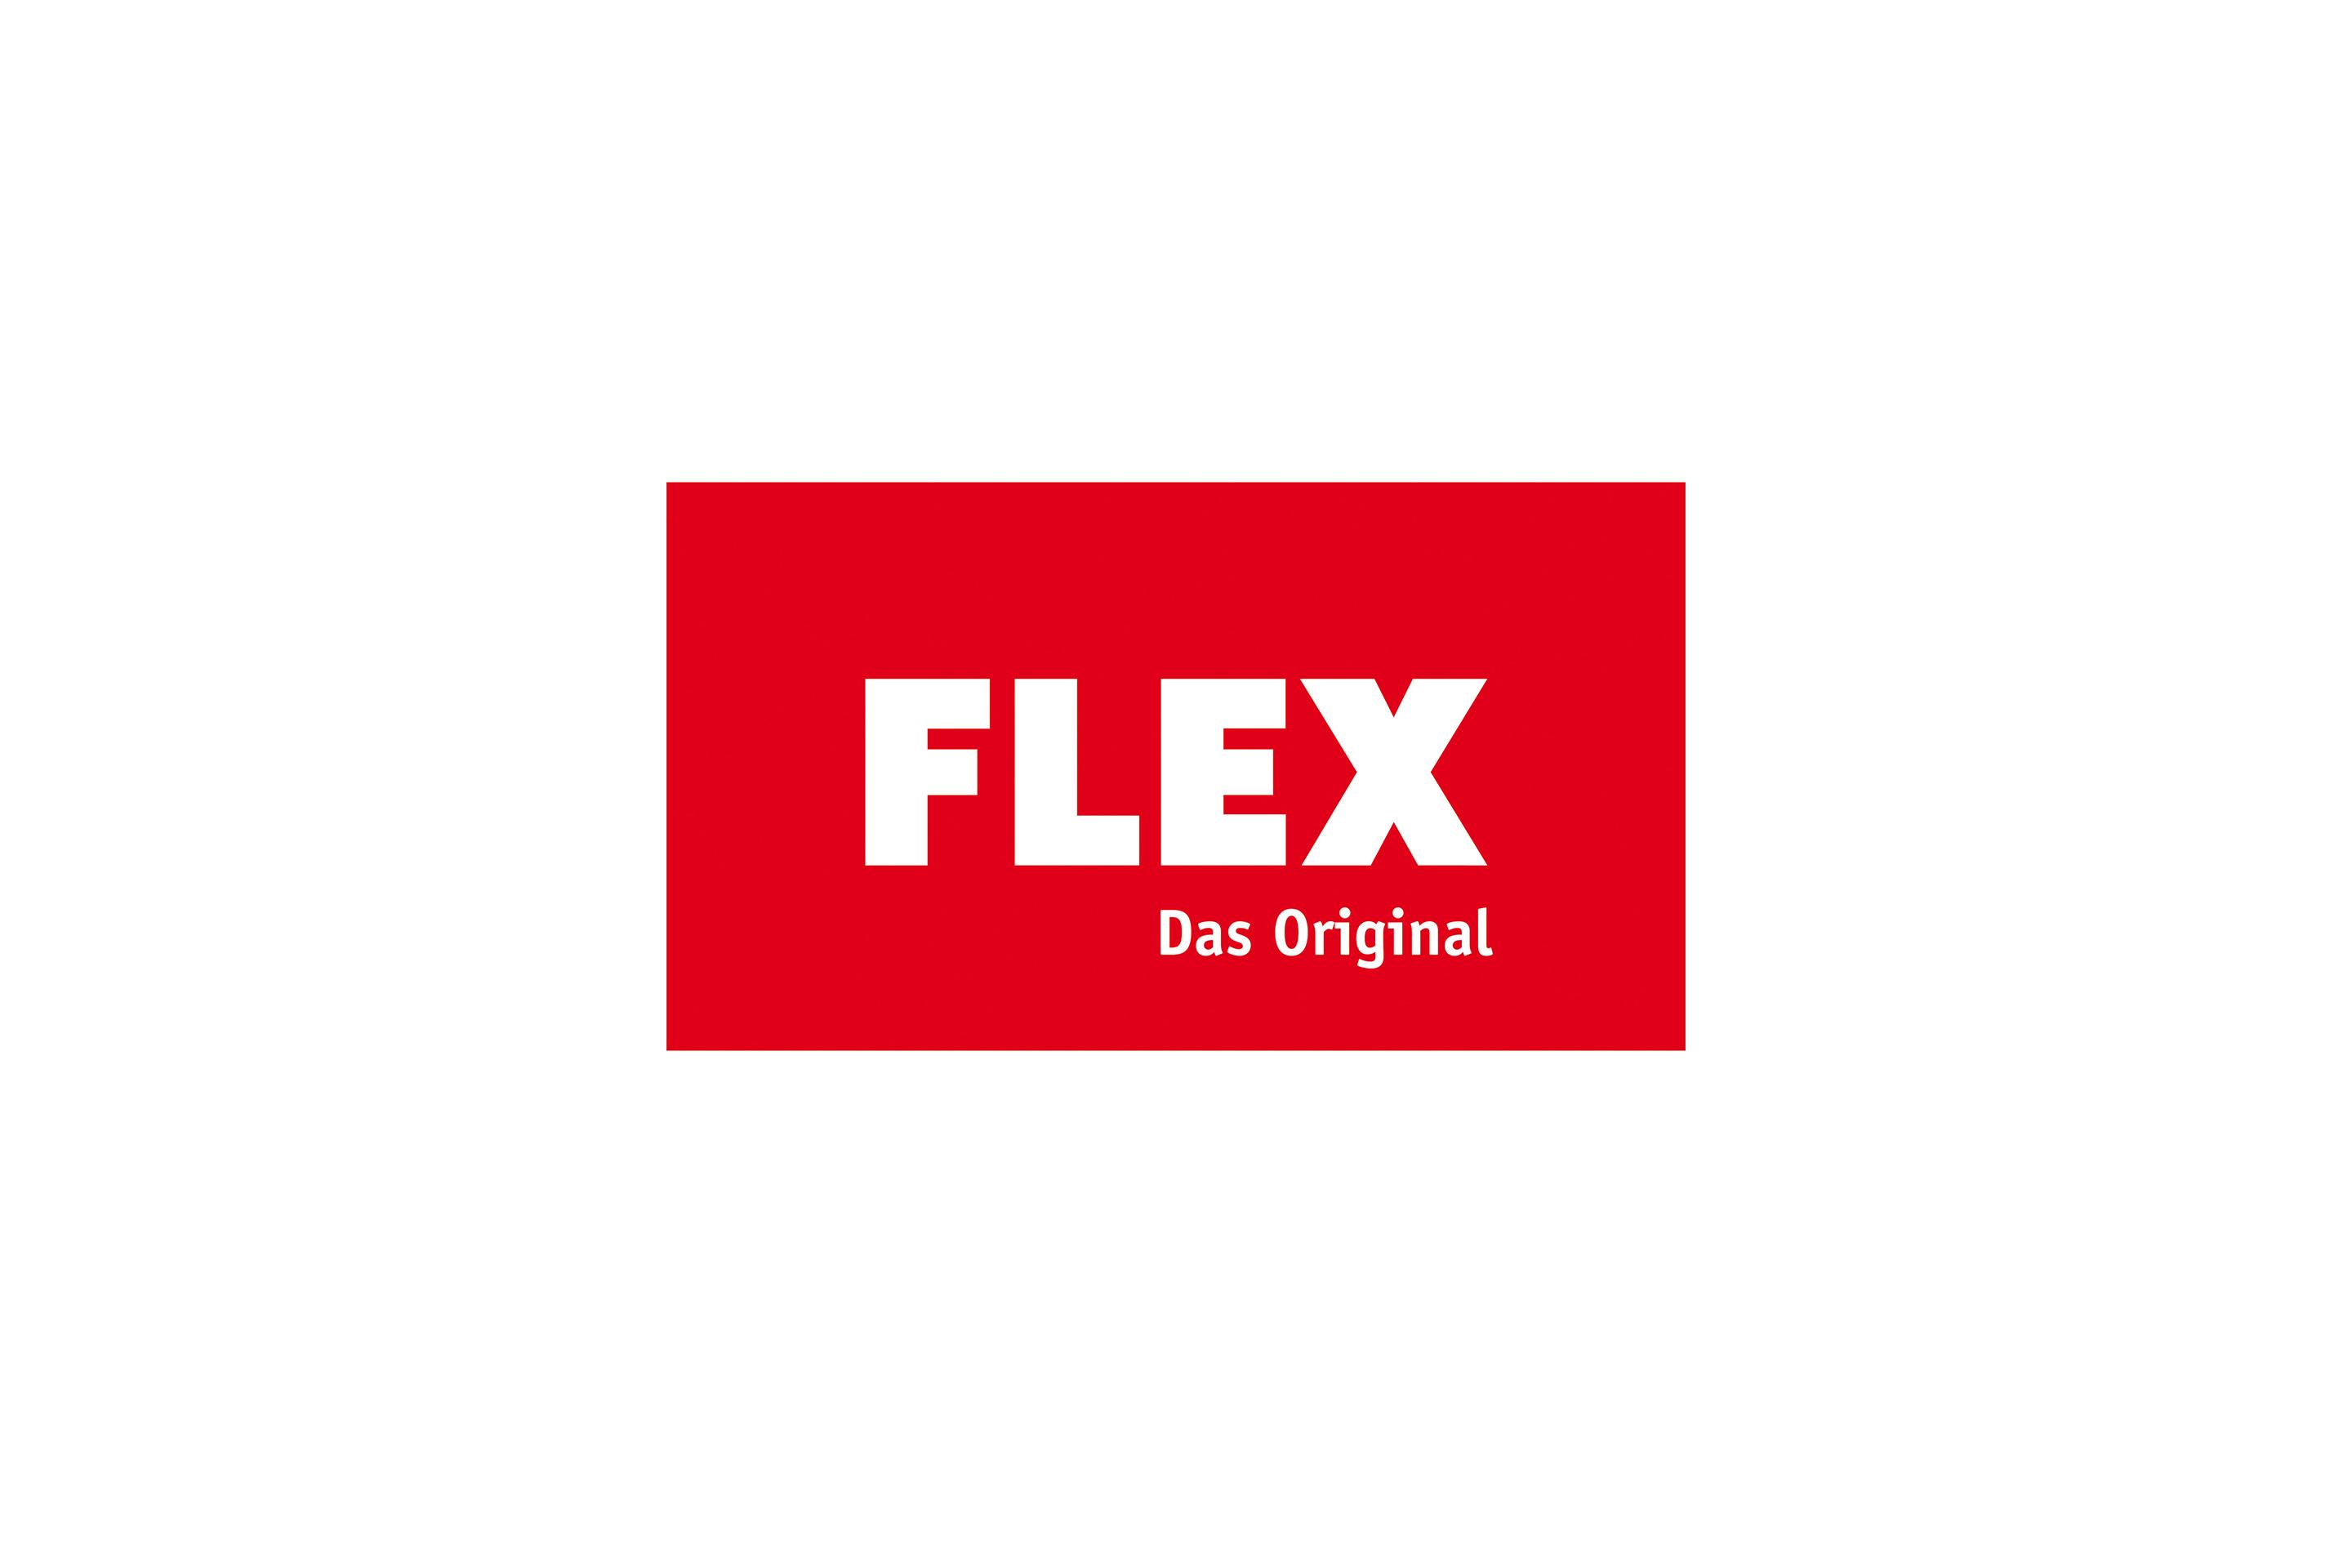 FLEX Das Original Logo Historie